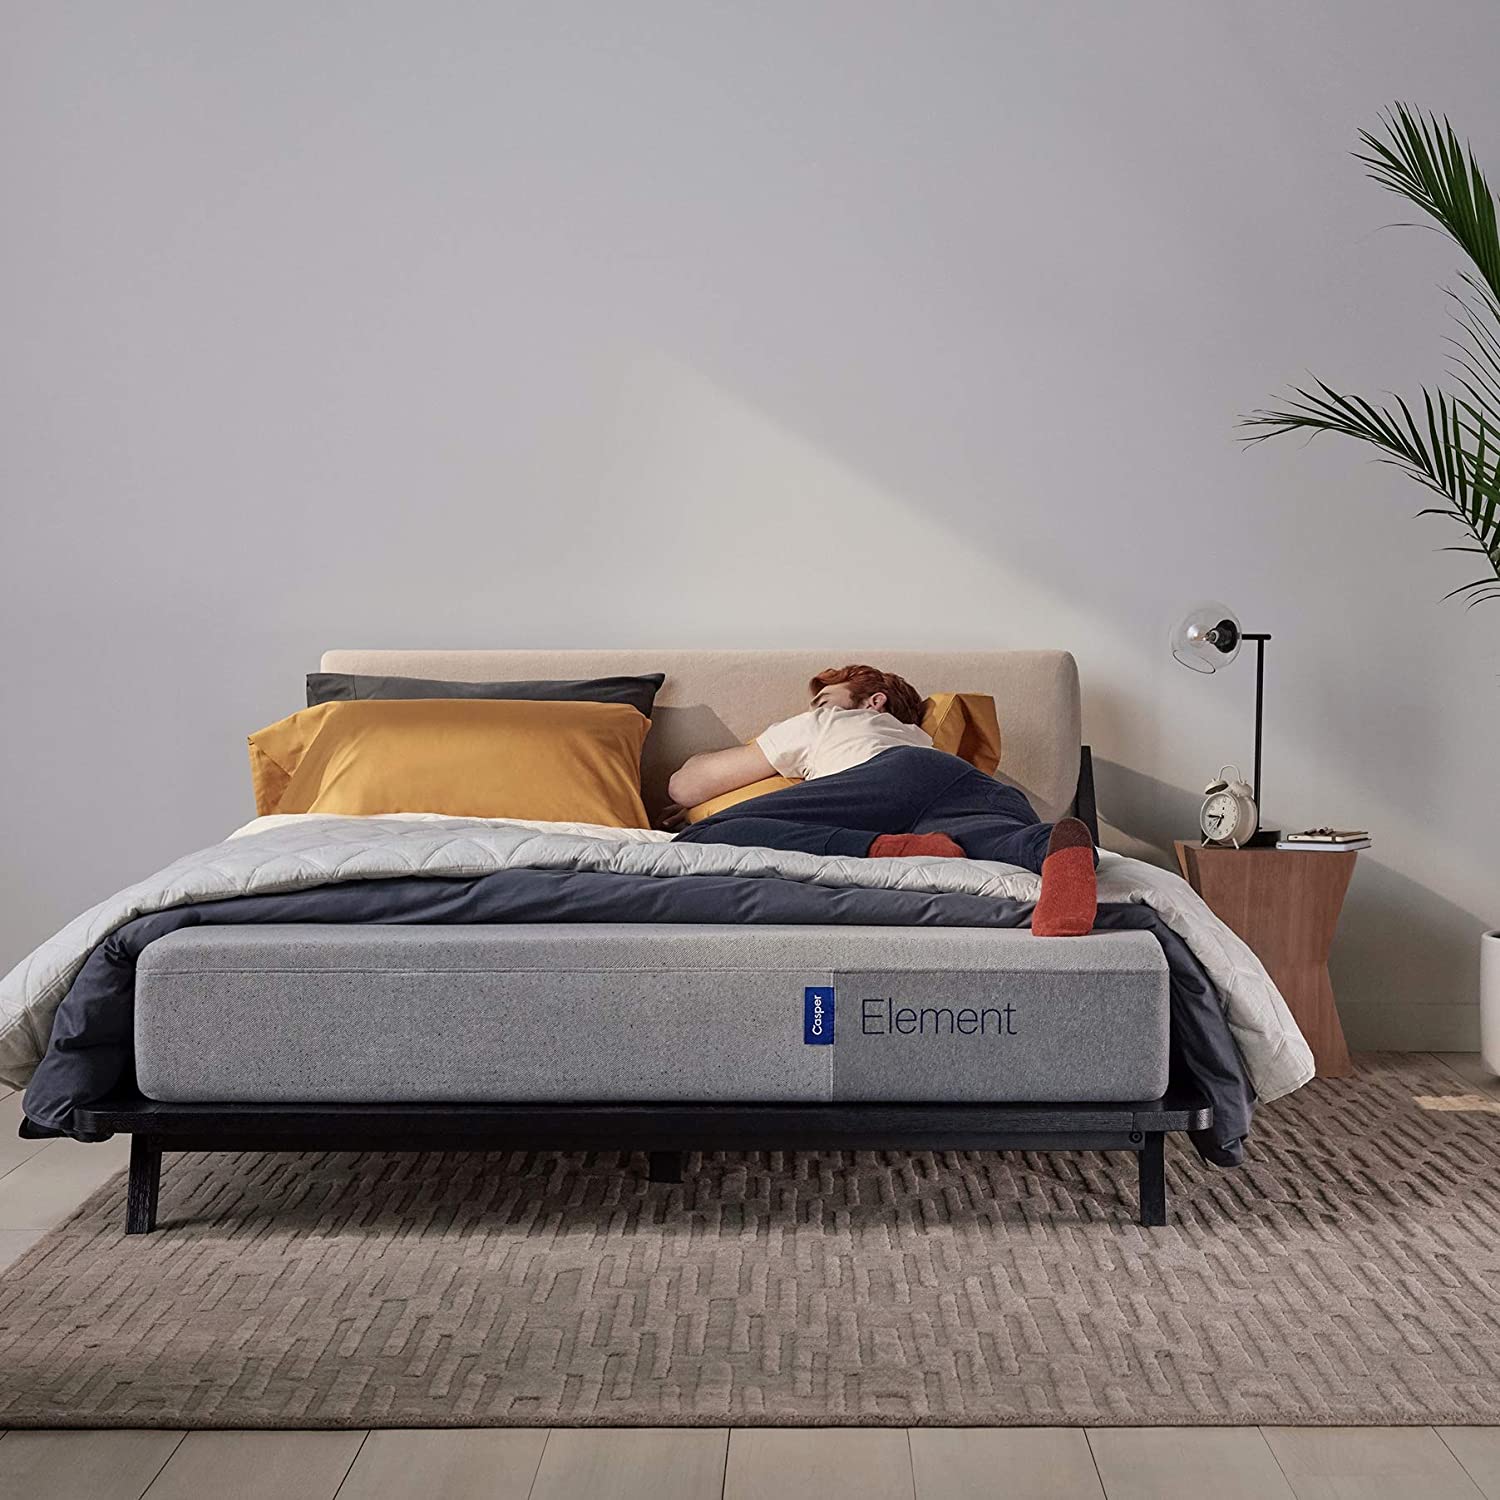 Casper Sleep Element Mattress, Twin XL, 2020 Model